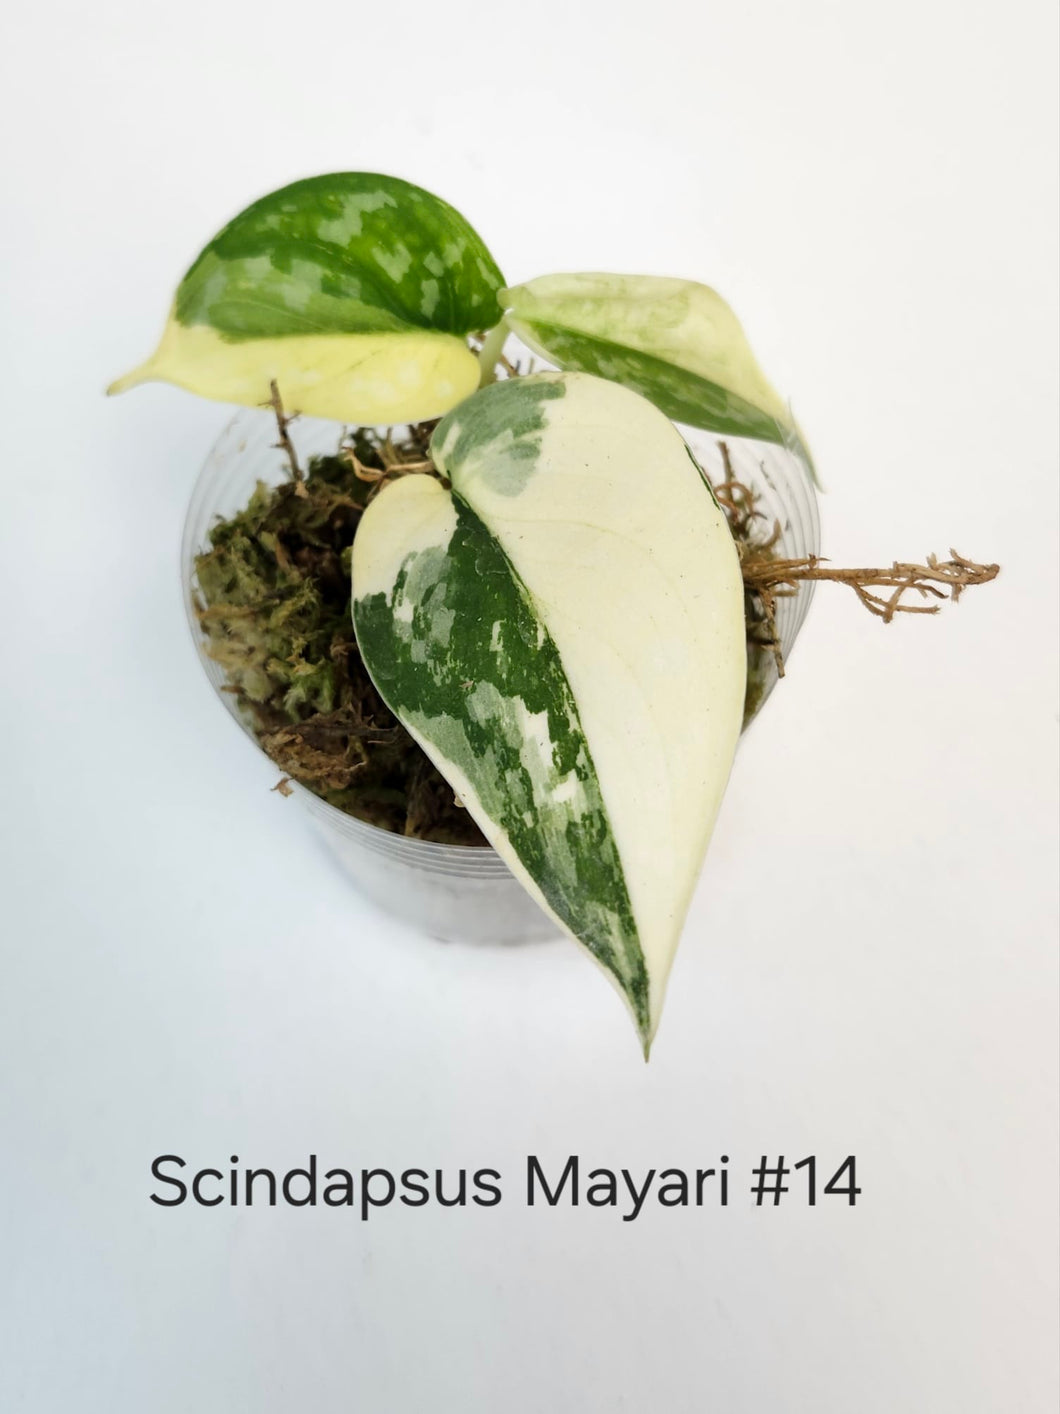 Scindapsus mayari #14